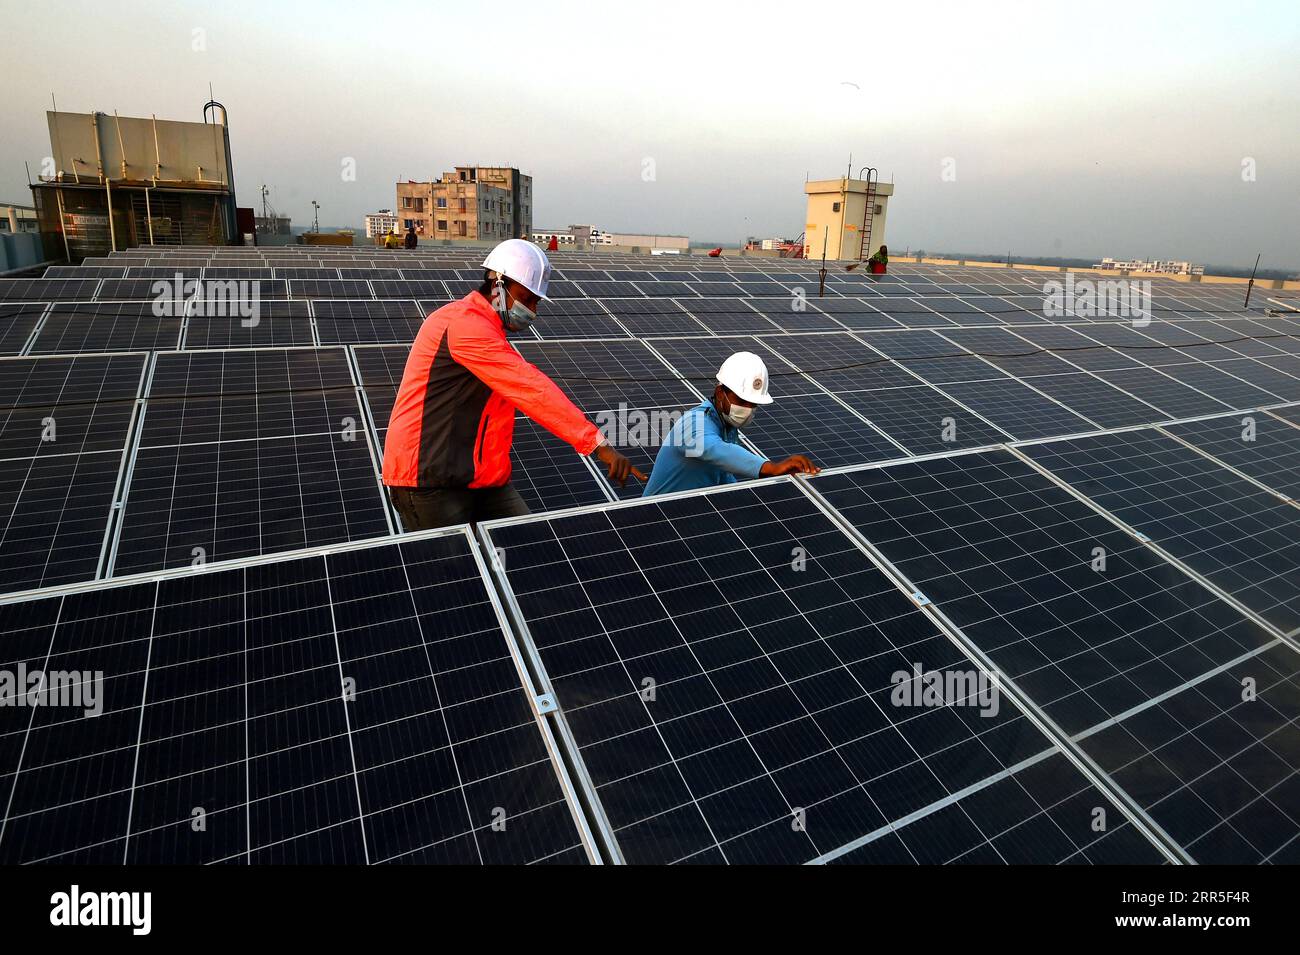 210104 -- GAZIPUR, 4 gennaio 2021 -- i supervisori controllano il processo di installazione dei pannelli solari in un edificio di fabbrica a Gazipur, alla periferia di Dacca, Bangladesh, il 3 gennaio 2021. Al giorno d'oggi i sistemi solari stanno diventando una forma sempre più popolare di energia alternativa in Bangladesh, e molte fabbriche del paese stanno passando a sistemi di energia solare. FABBRICA DEL BANGLADESH - ENERGIA SOLARE Salim PUBLICATIONxNOTxINxCHN Foto Stock